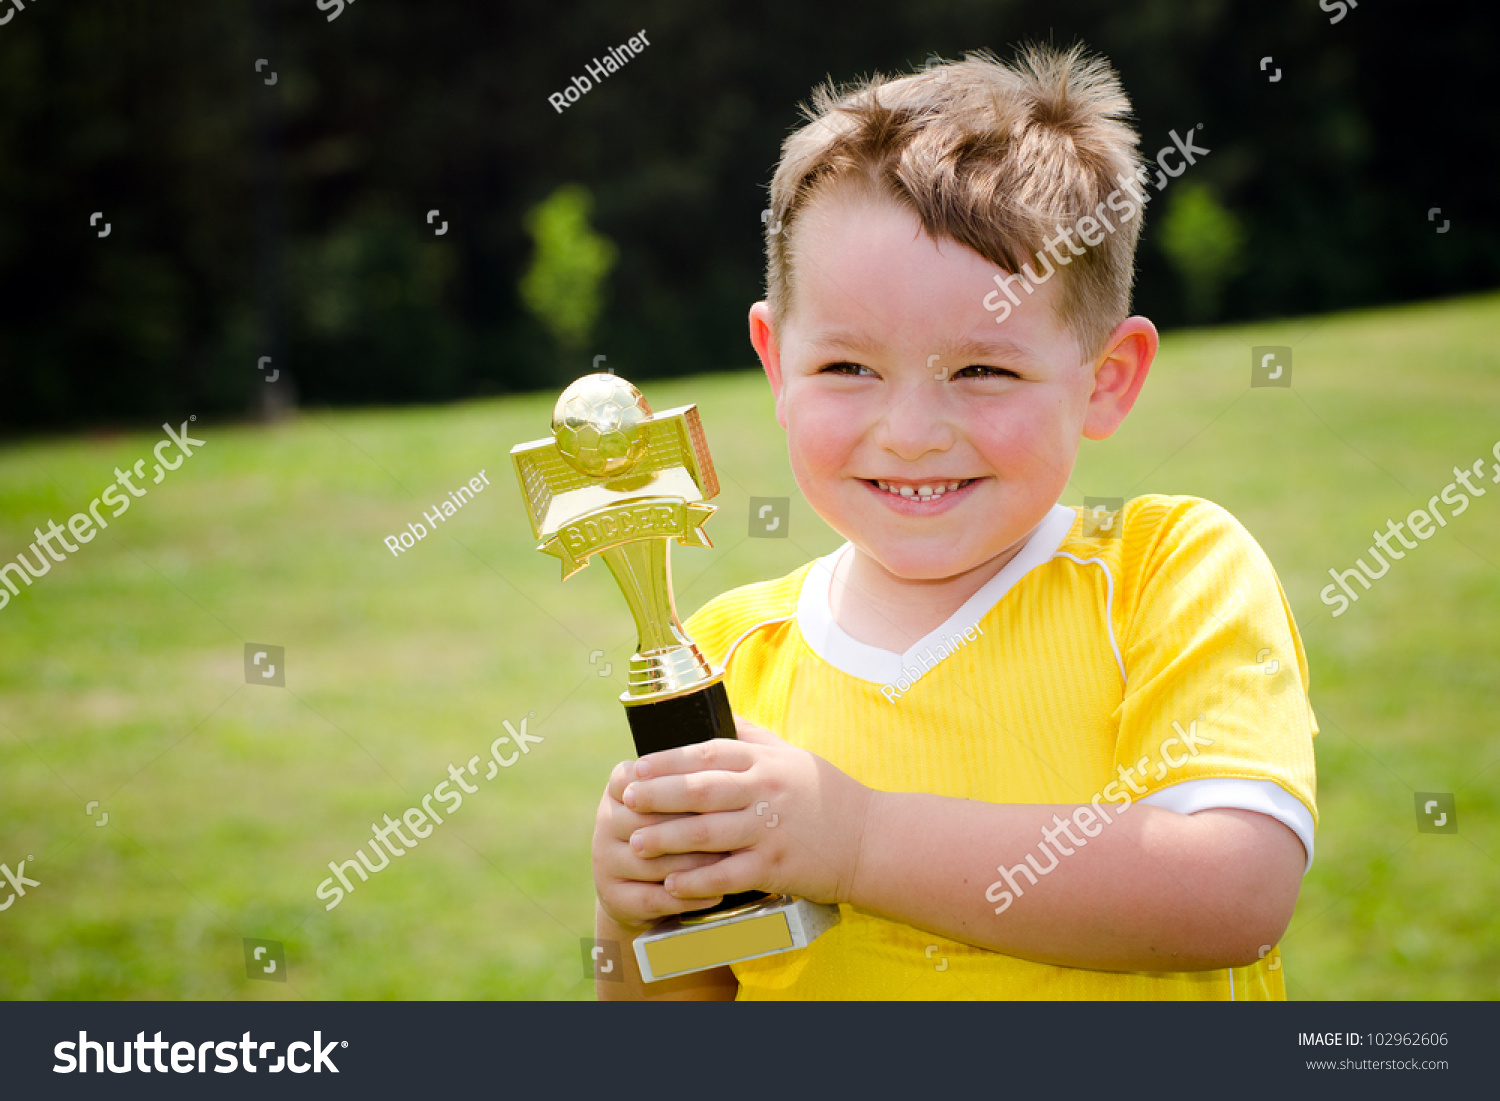 年轻的足球运动员穿制服,他的新奖杯 - 人物,运